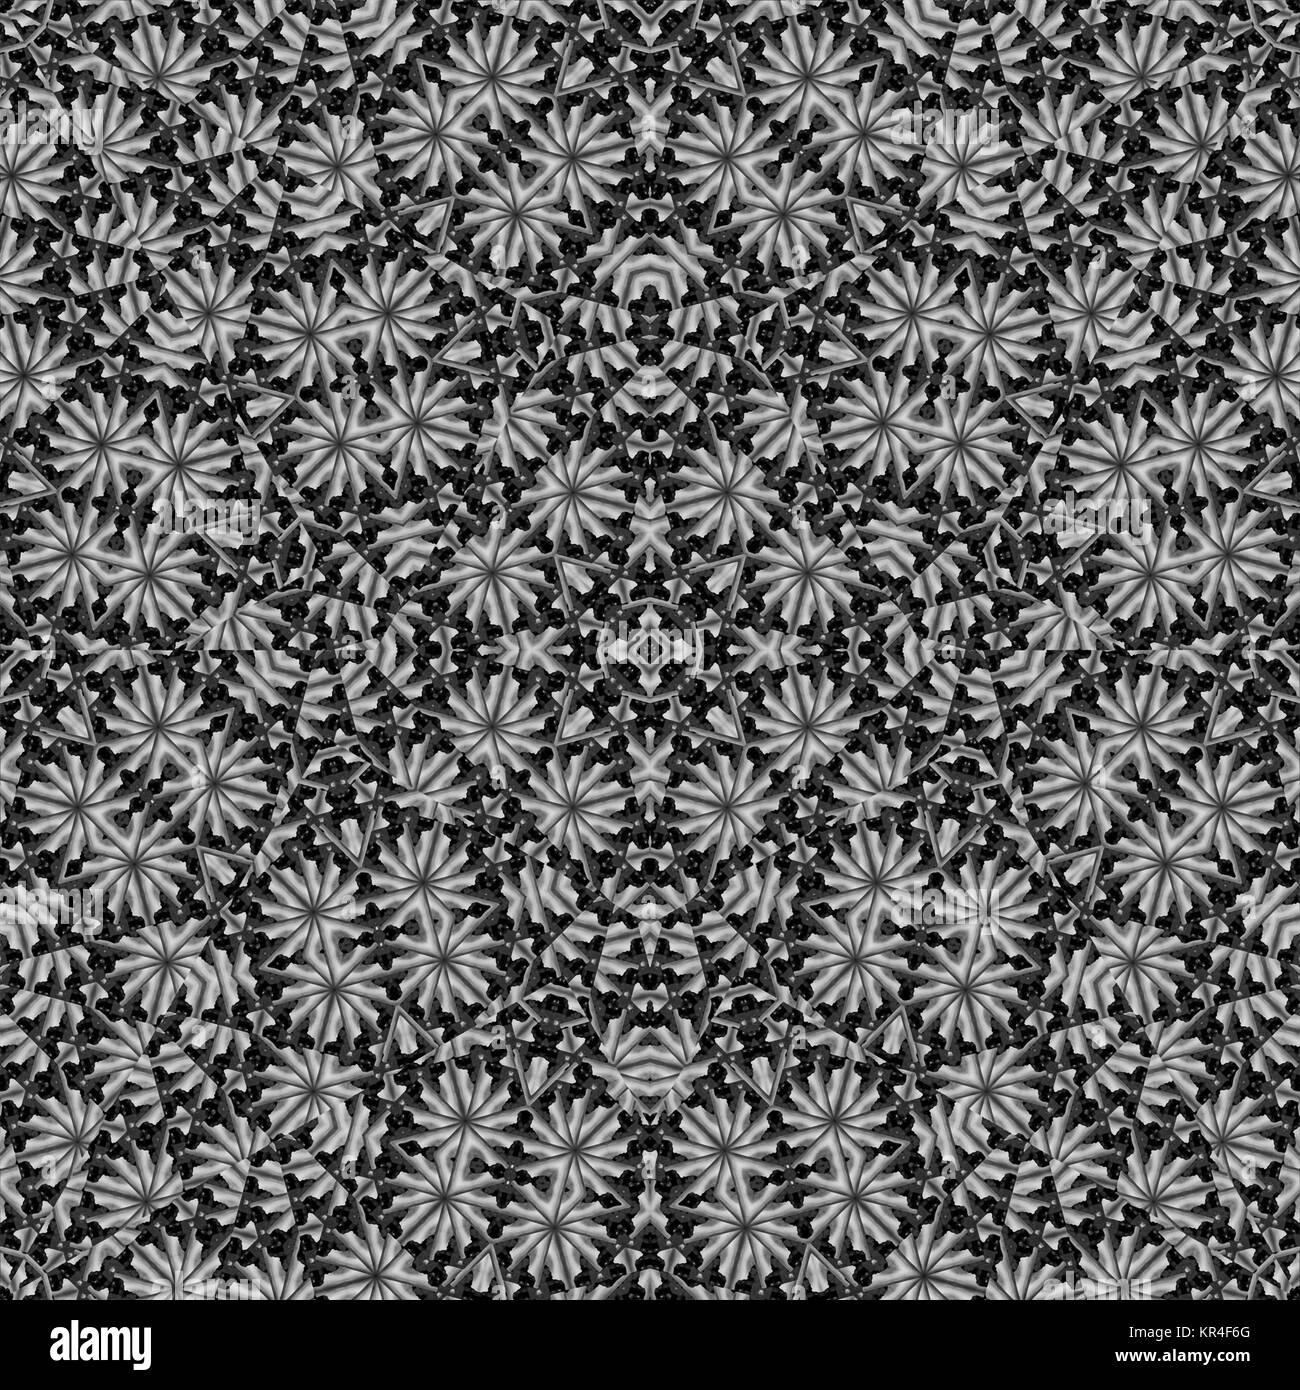 Il giardino segreto dedalo floreali Pattern collage Foto Stock